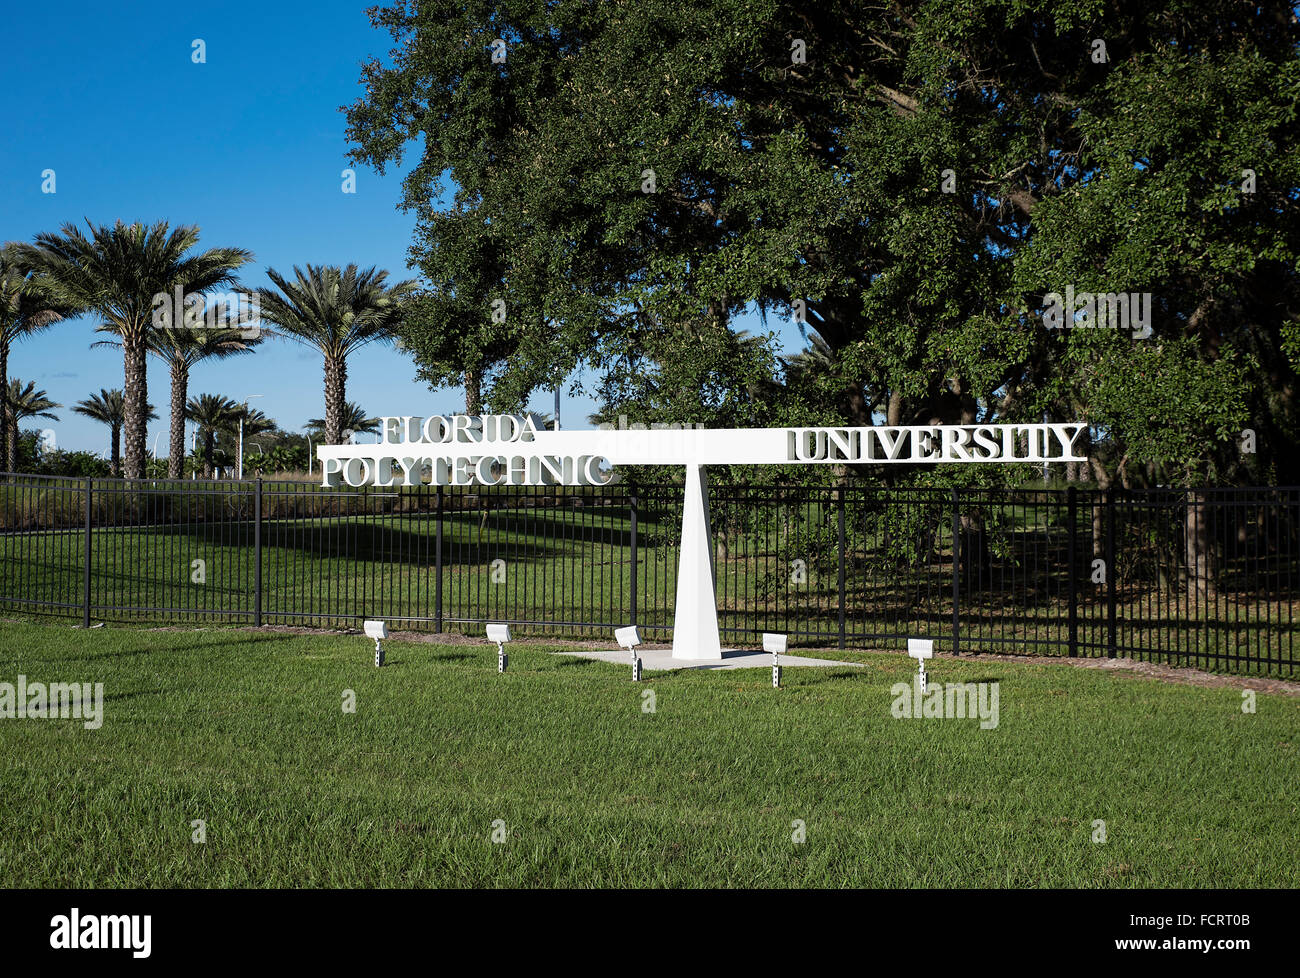 Florida Polytechnic University, Lakeland, Florida, USA Stock Photo